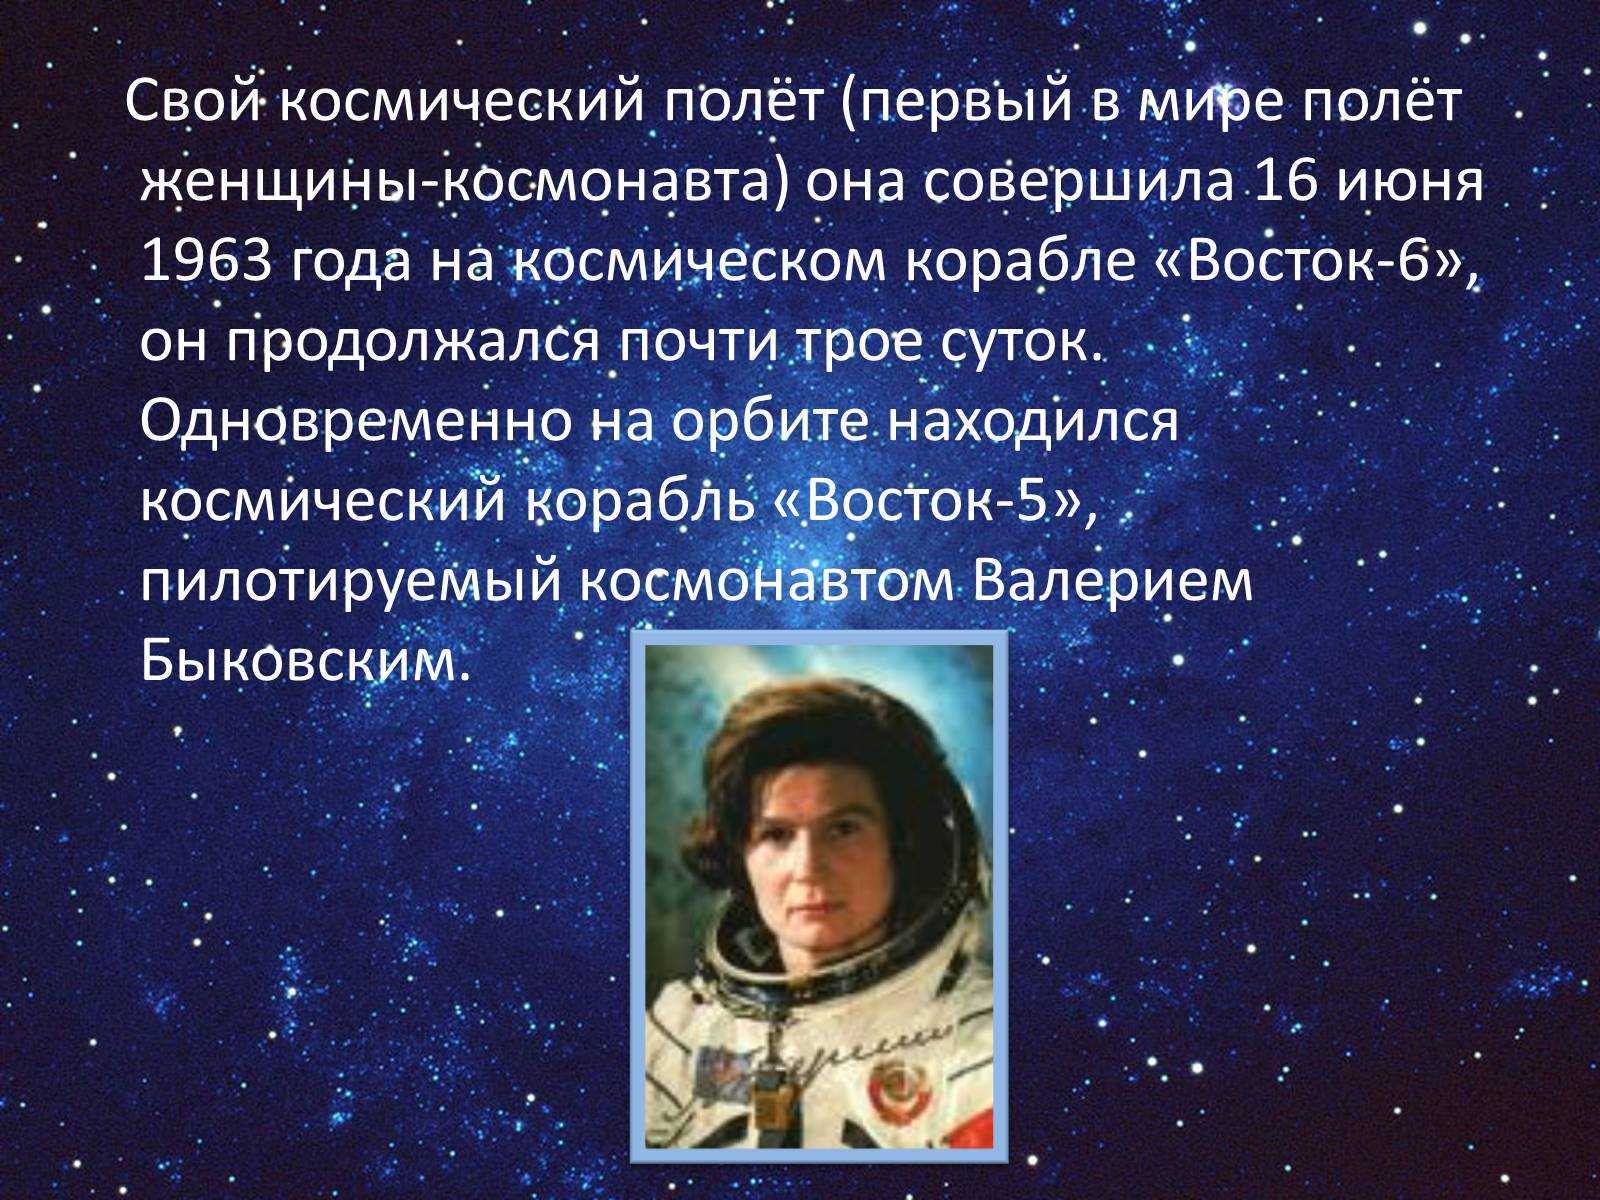 Почему важен праздник день космонавтики для россиян. Презентация на тему 12 апреля. День космонавтики. Информация на тему космонавтика. День космонавтики презентация.